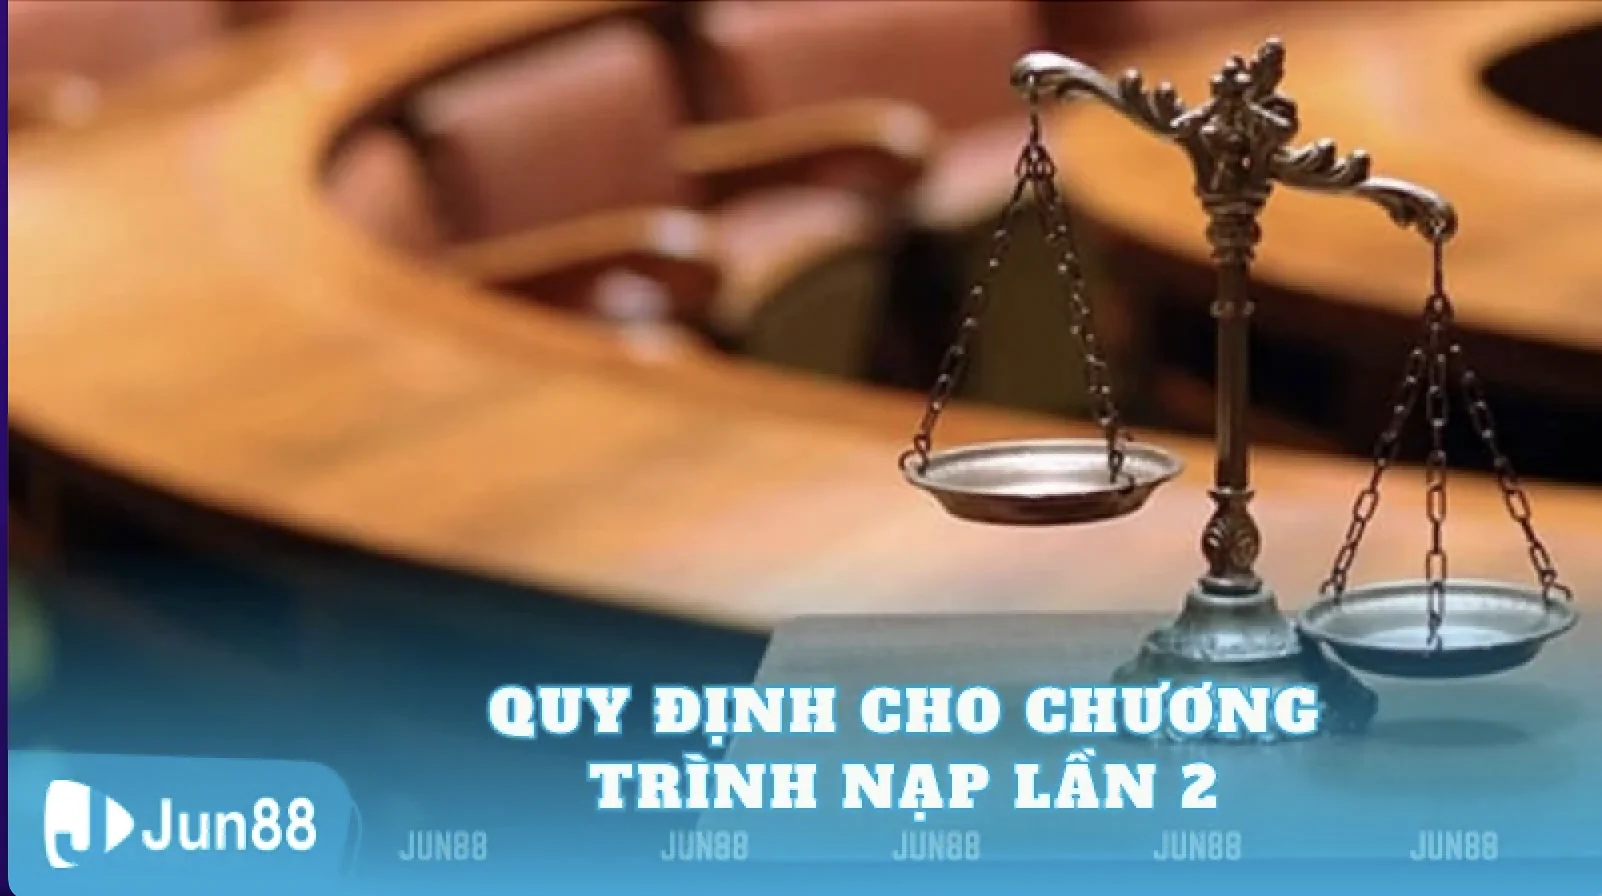 hinh-anh-co-hoi-nhan-thuong-lon-voi-chuong-trinh-nap-lan-2-thuong-den-8888000vnd-tai-jun88-158-3